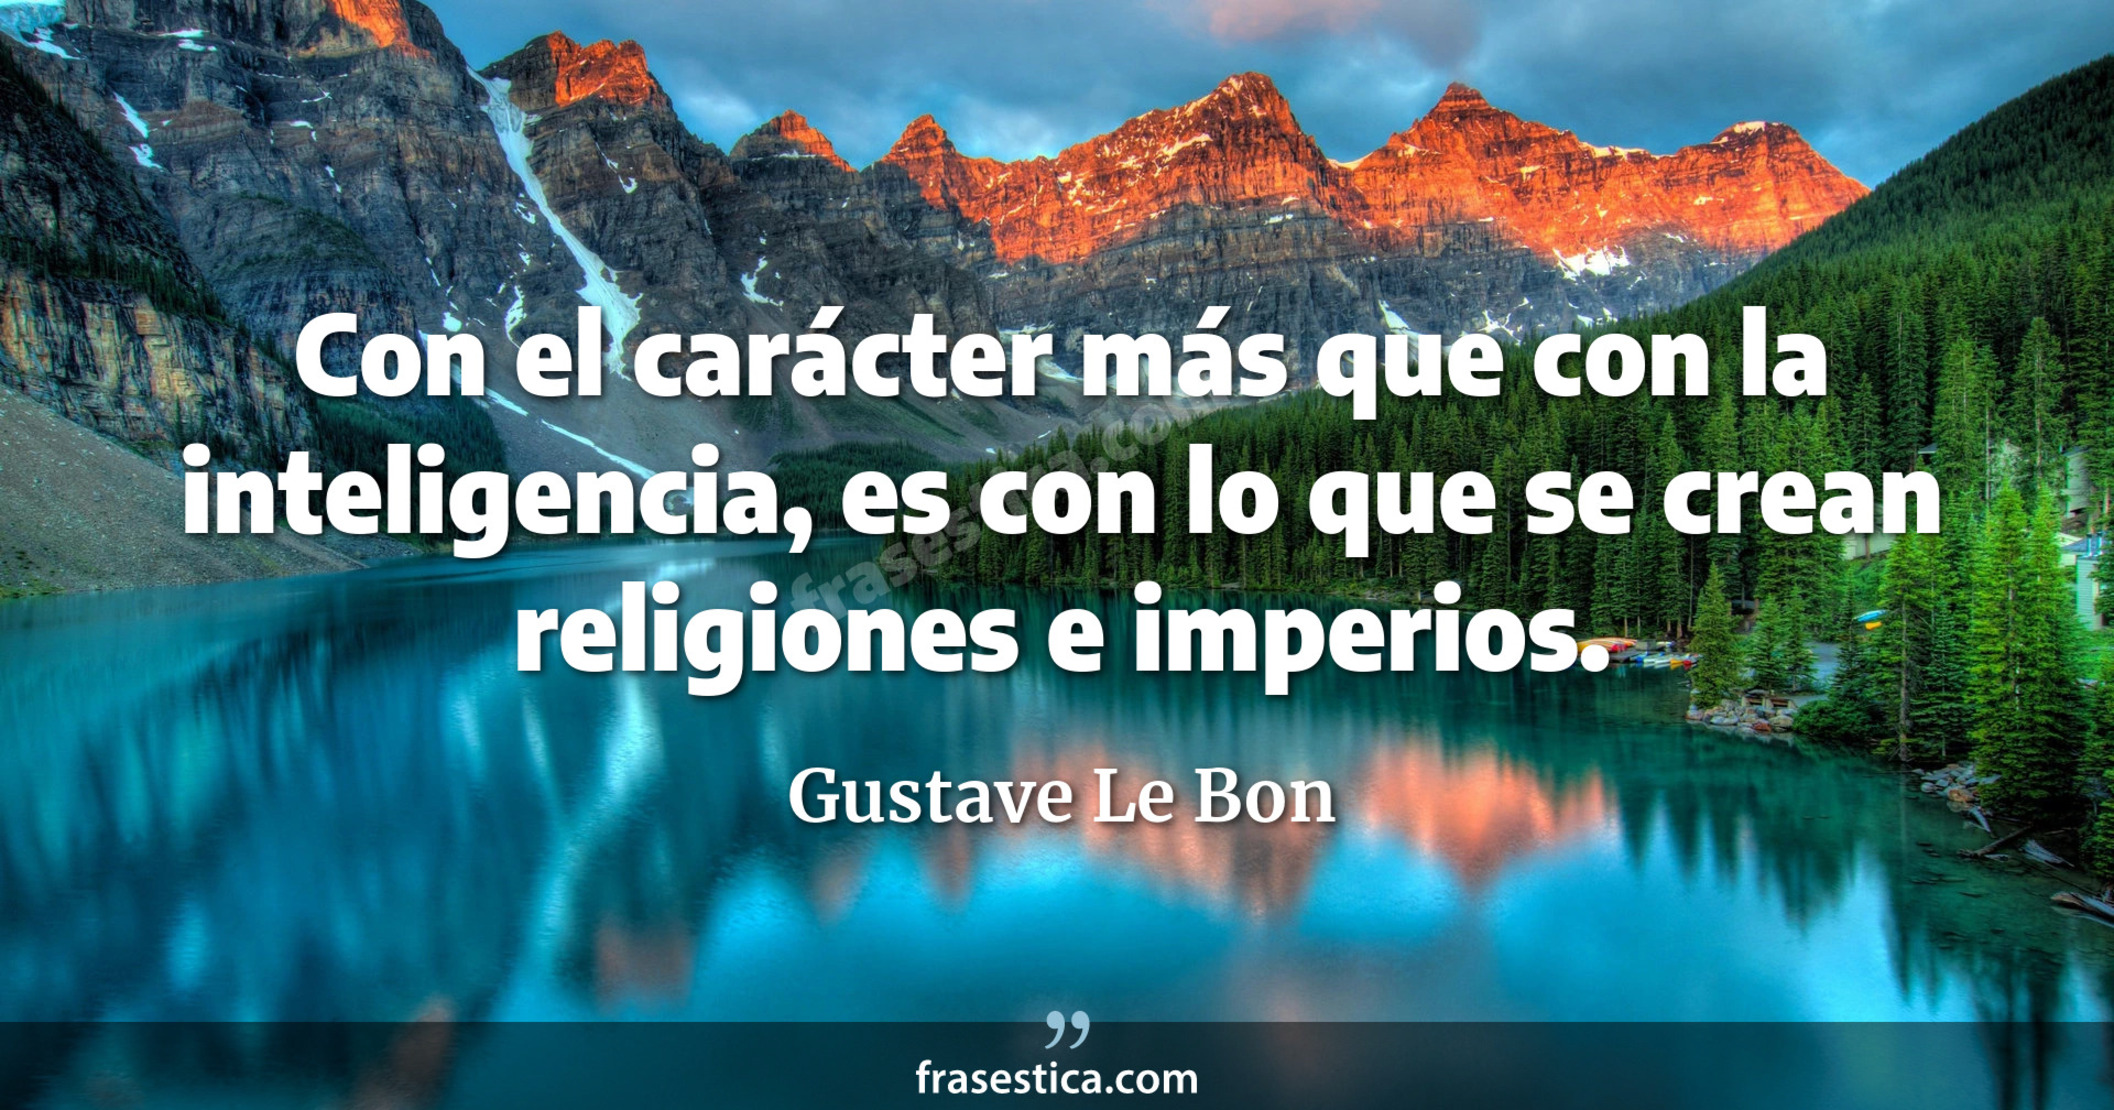 Con el carácter más que con la inteligencia, es con lo que se crean religiones e imperios. - Gustave Le Bon